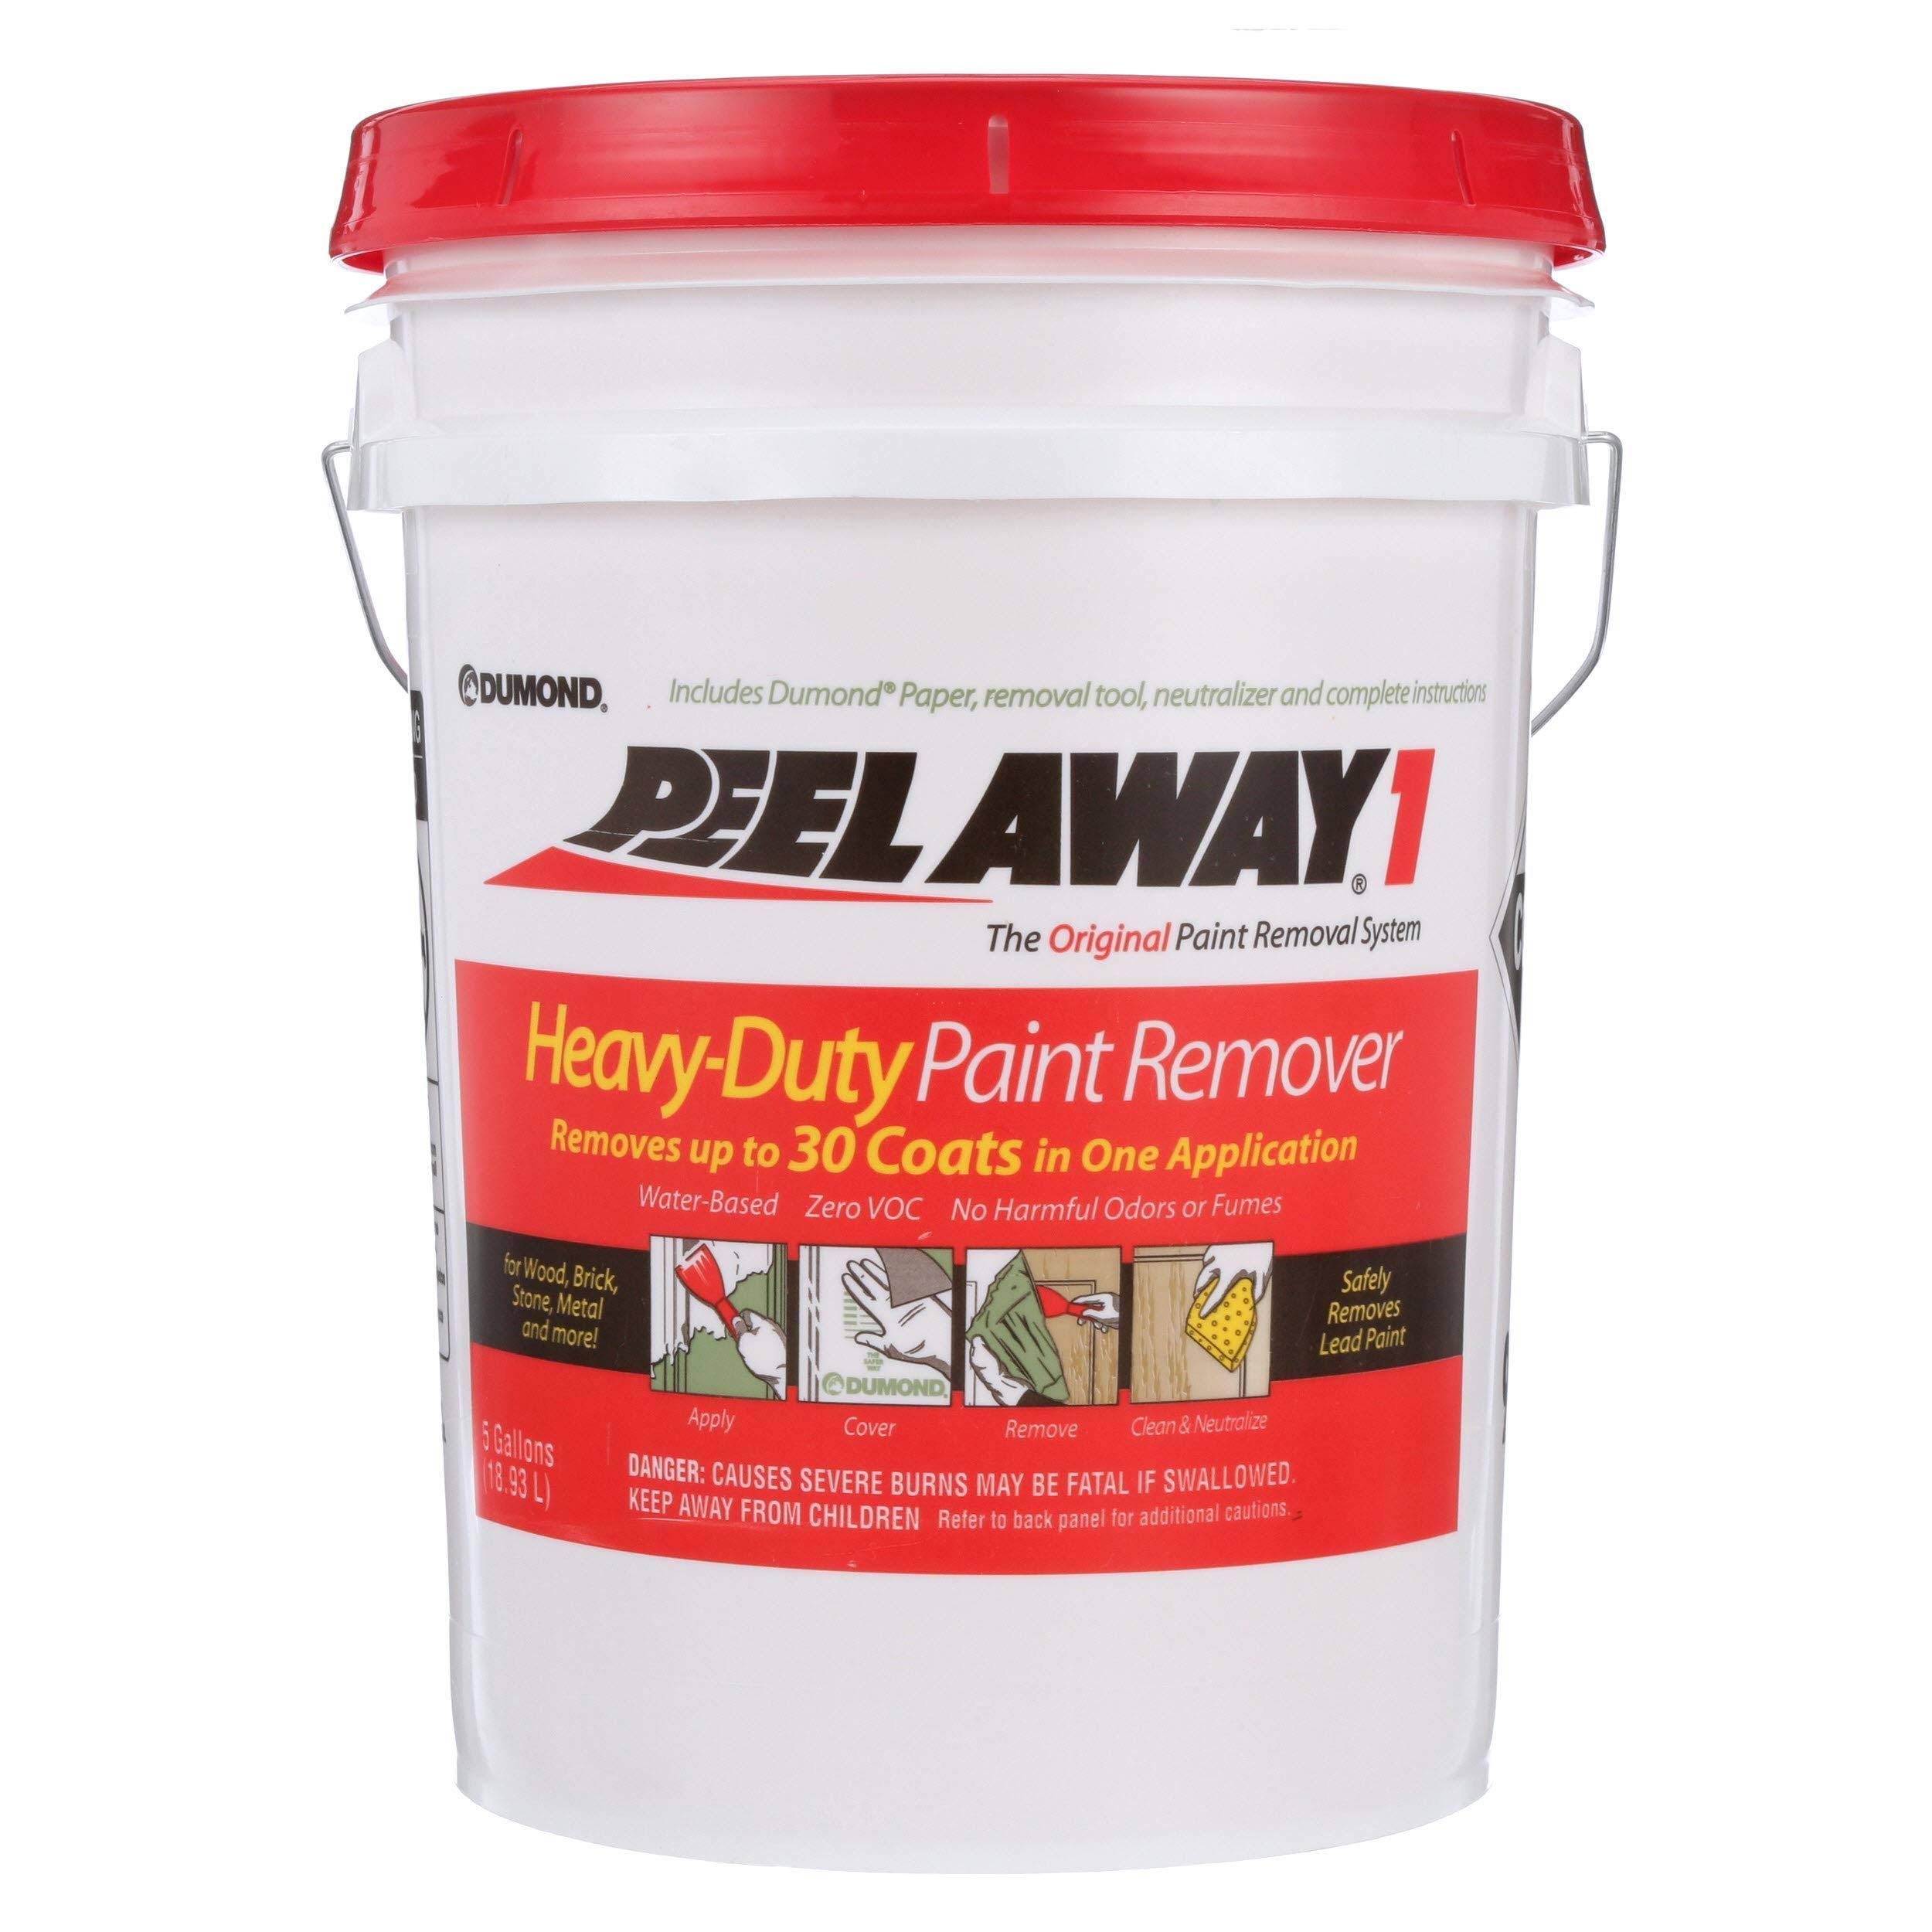 Dumond Peel Away1 Heavy Duty Paint Remover - 5gal